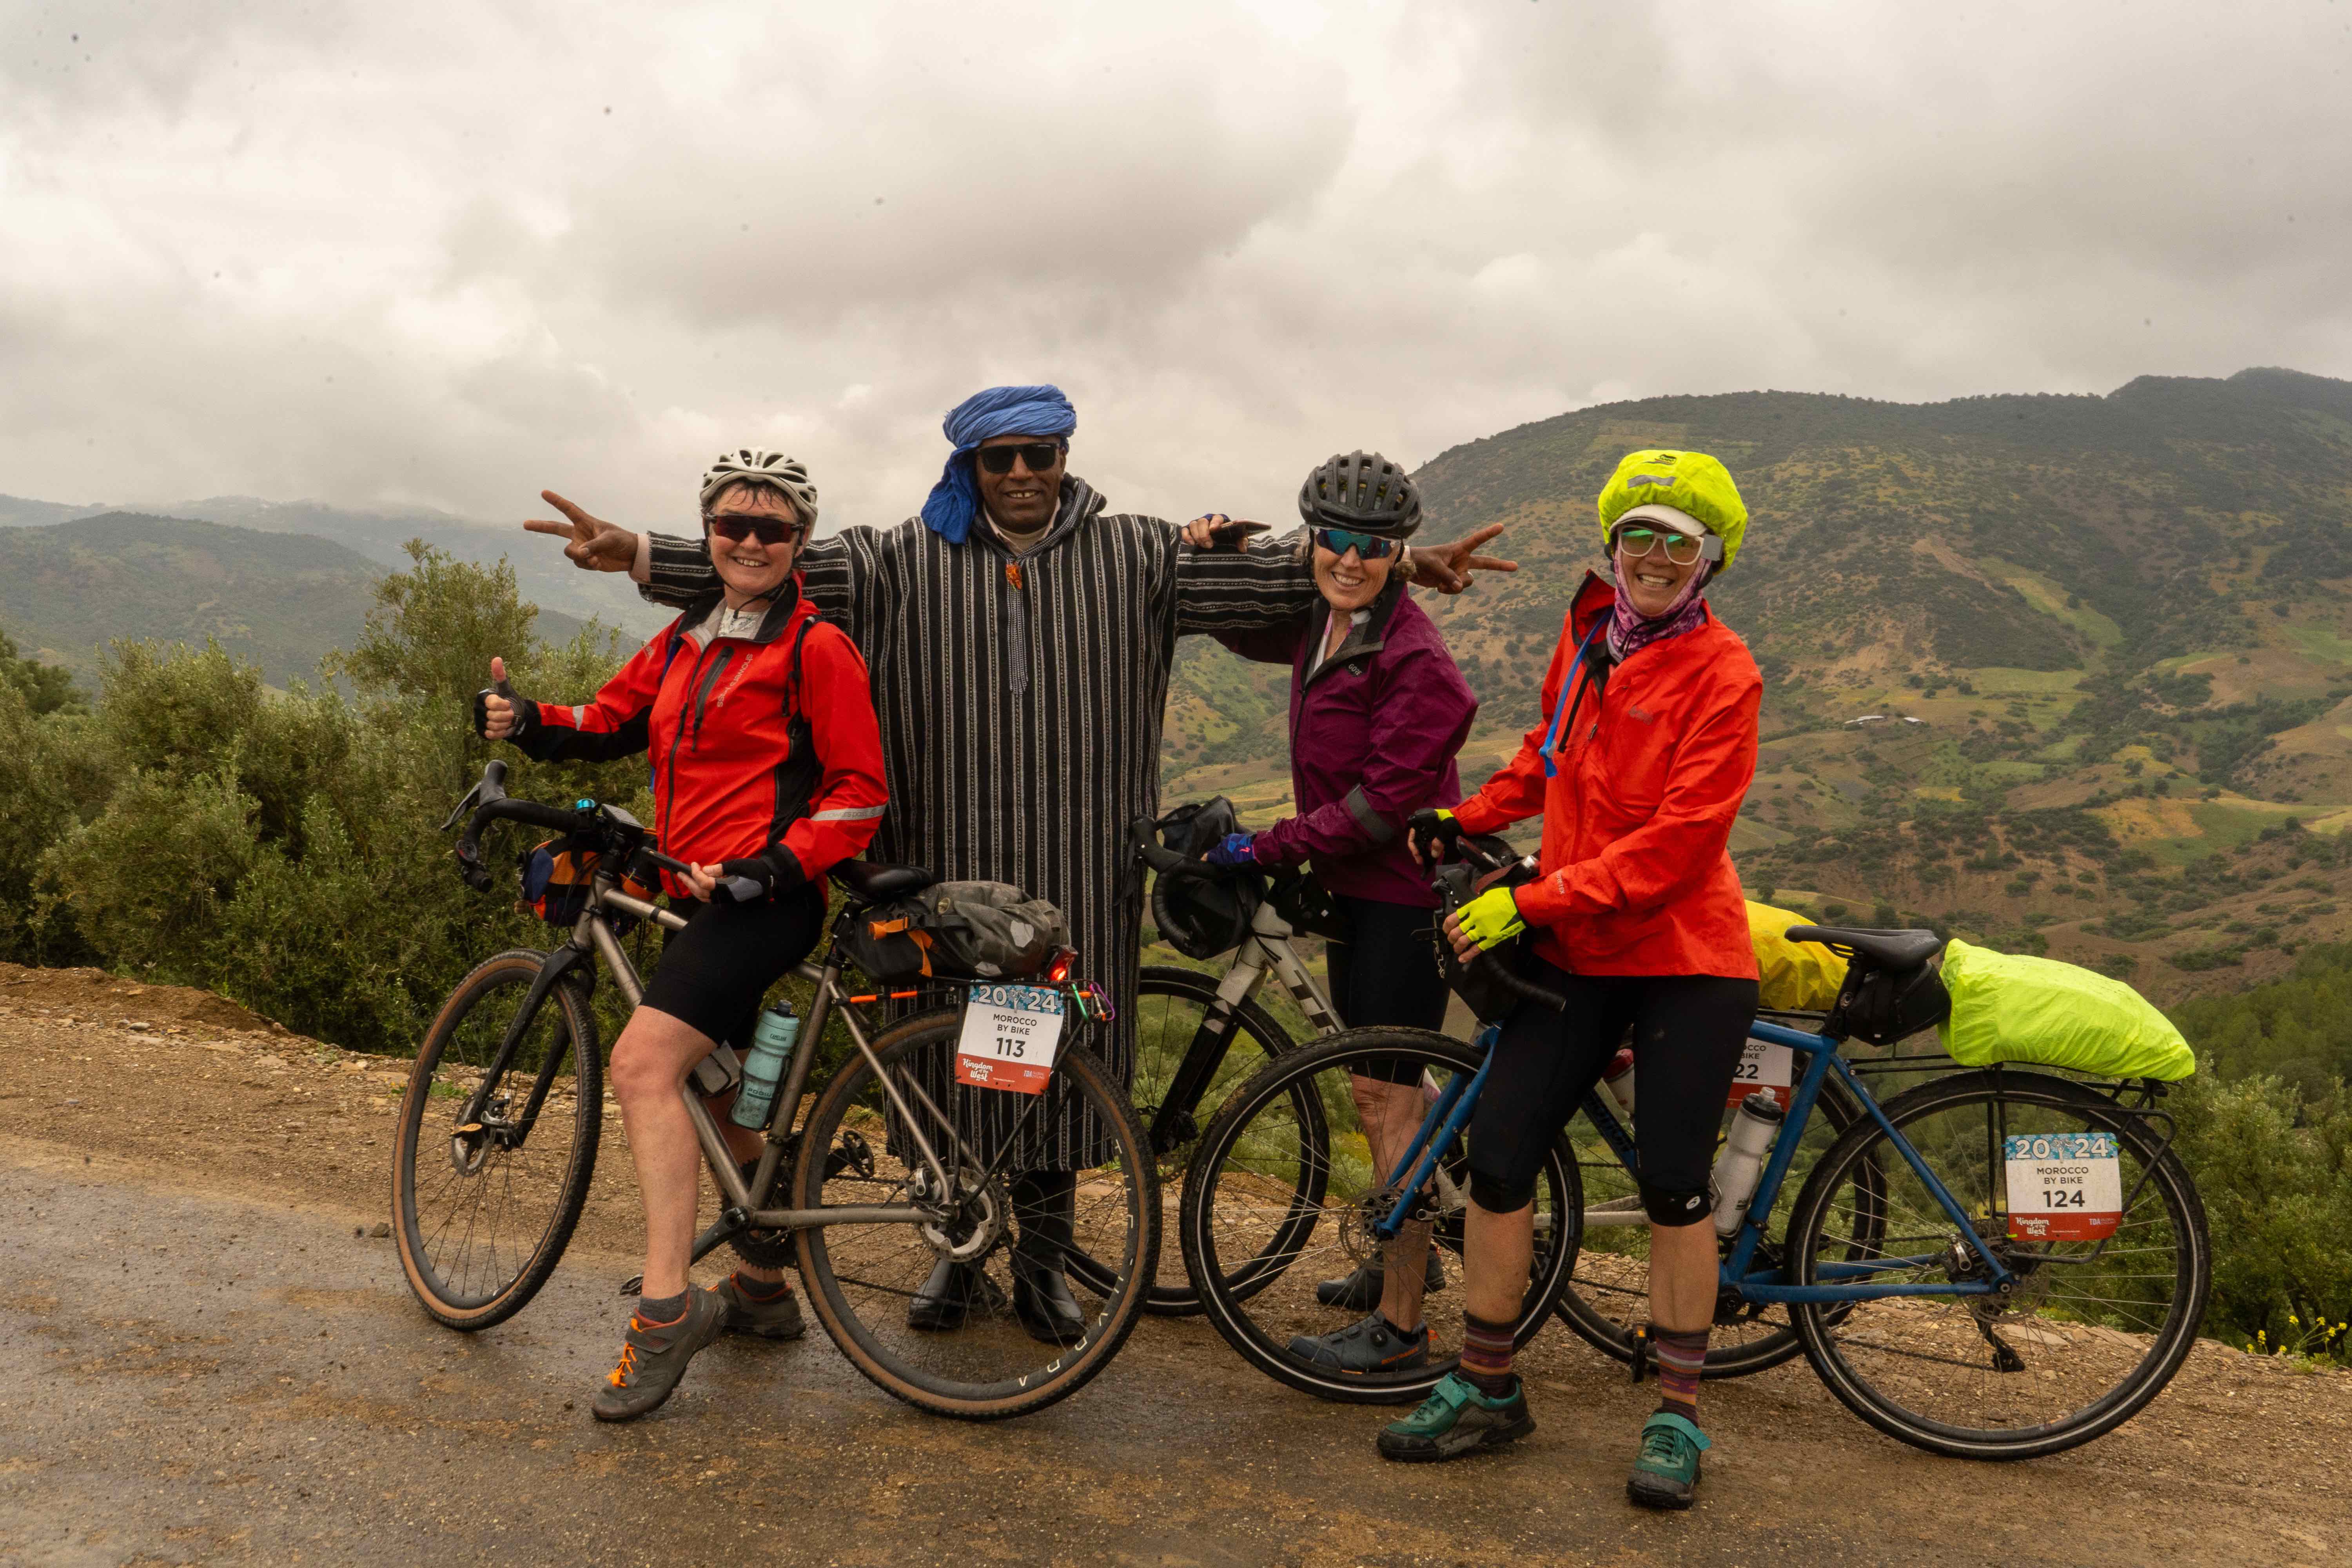 Resorna innebär inte bara cykling på fantastiska platser. De bjuder även på härliga möten med lokalbefolkningen. Här poseras det under en resa genom Marocko.